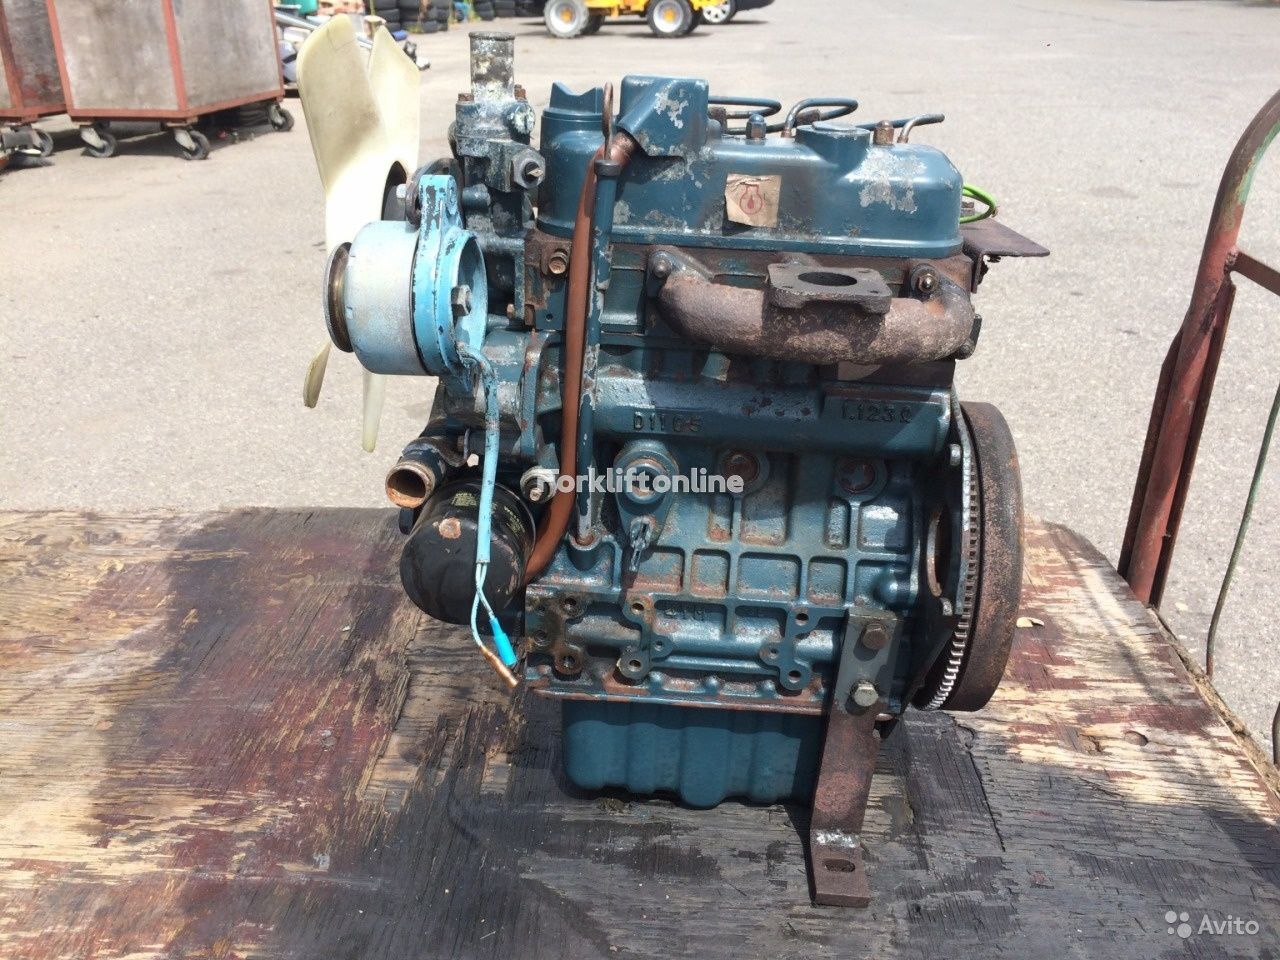 Kubota D1105 motor for varehus maskiner